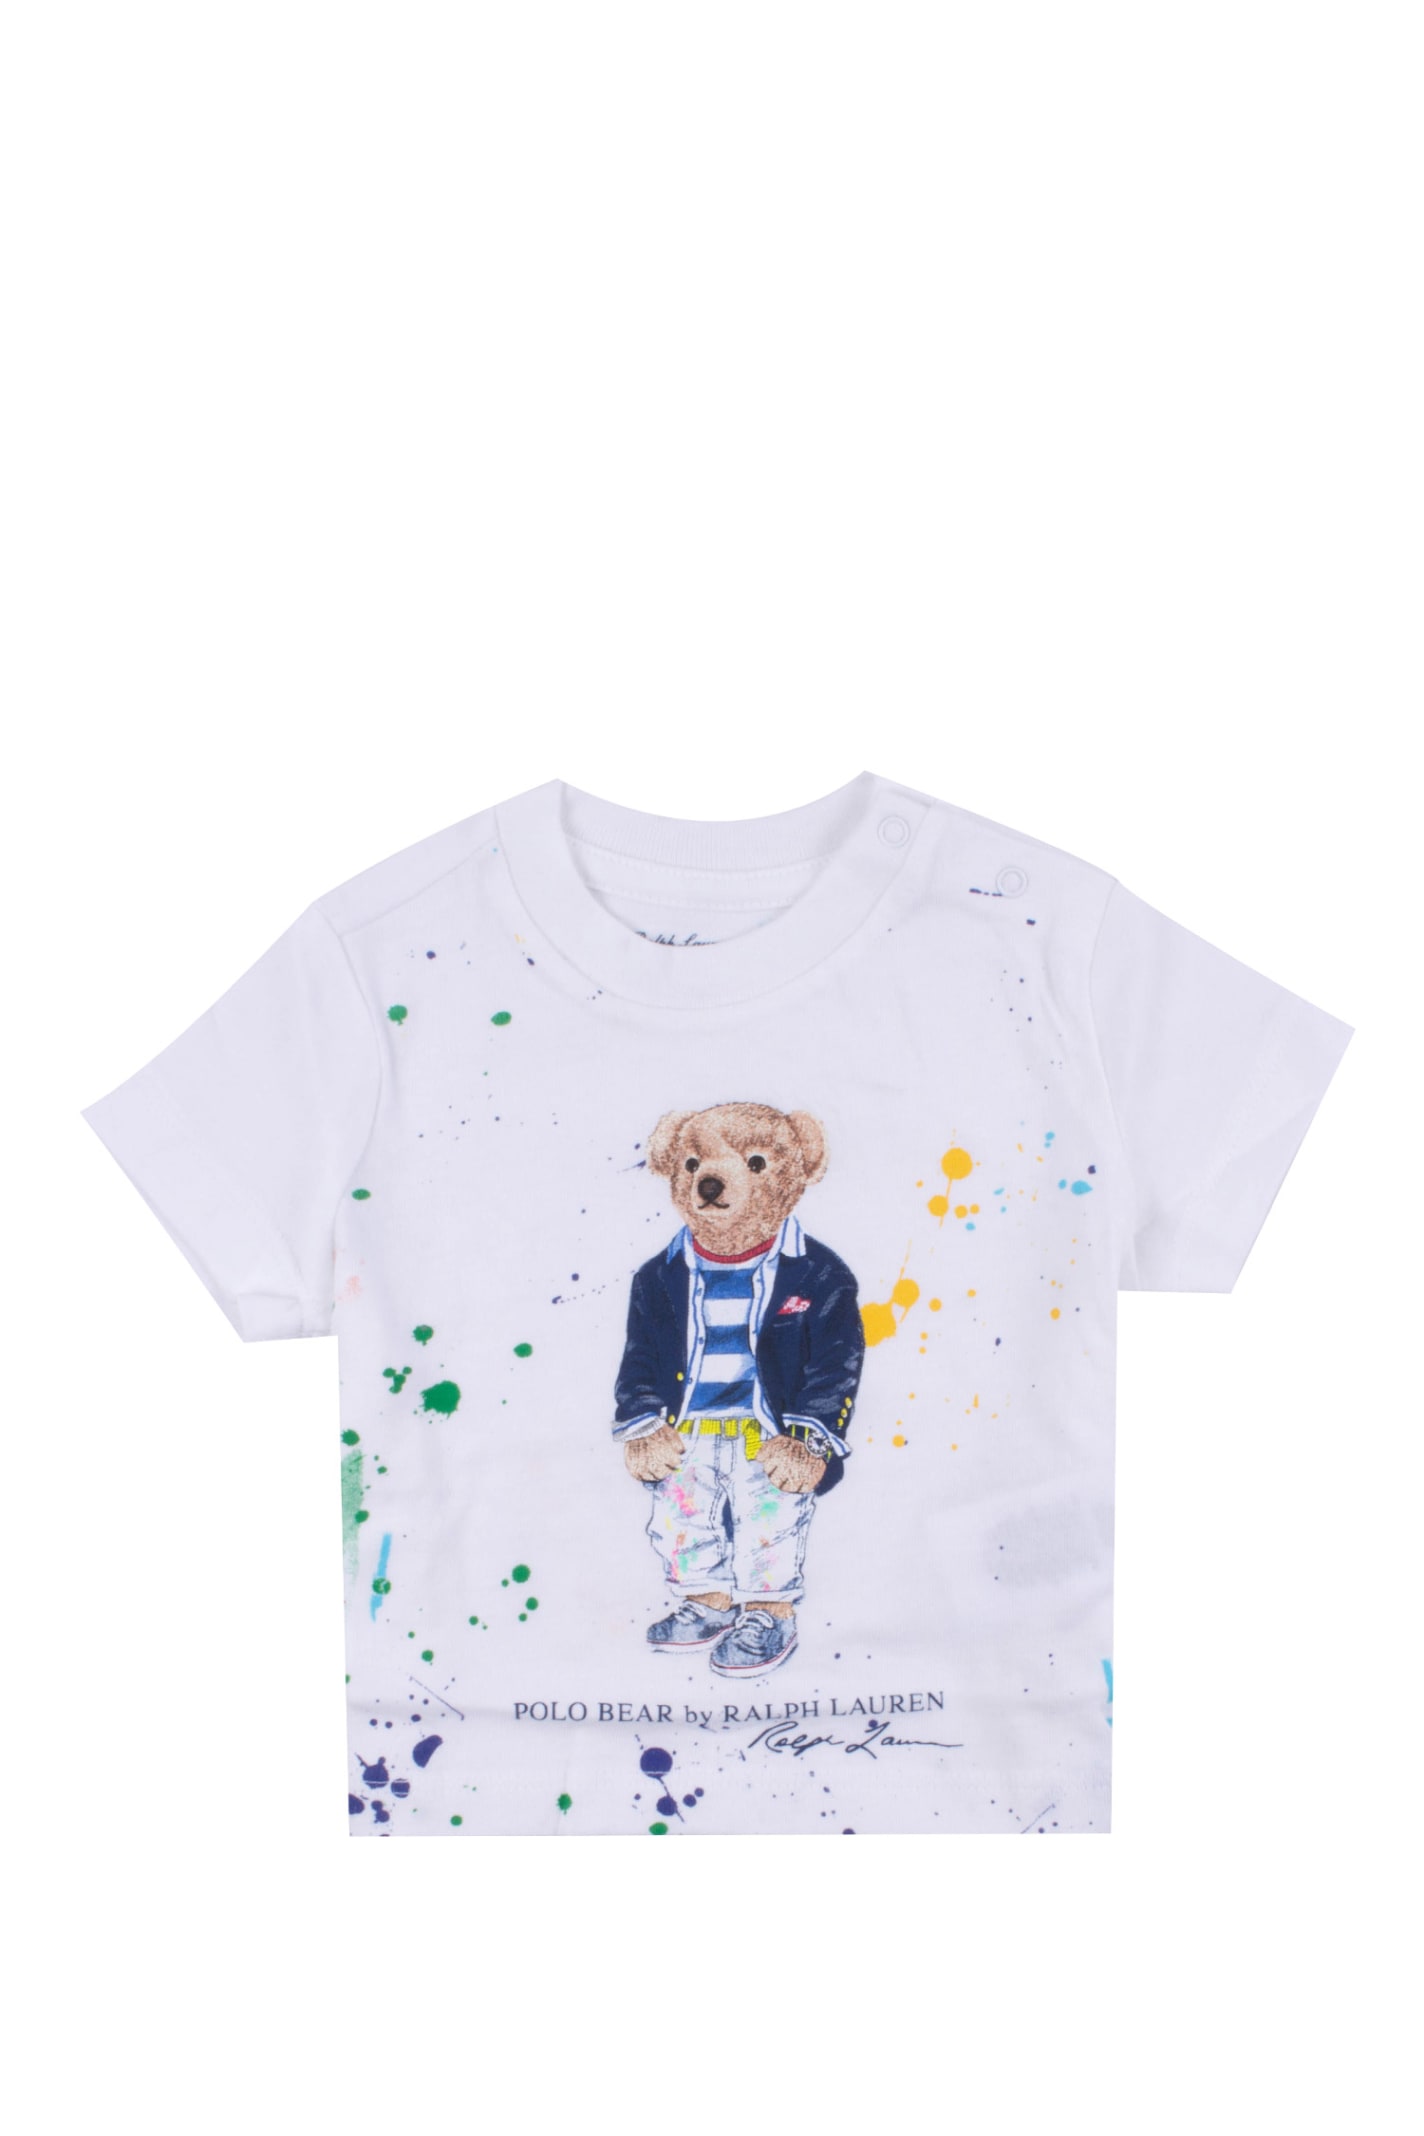 Ralph Lauren Polo Bear T-shirt With Paint Splash